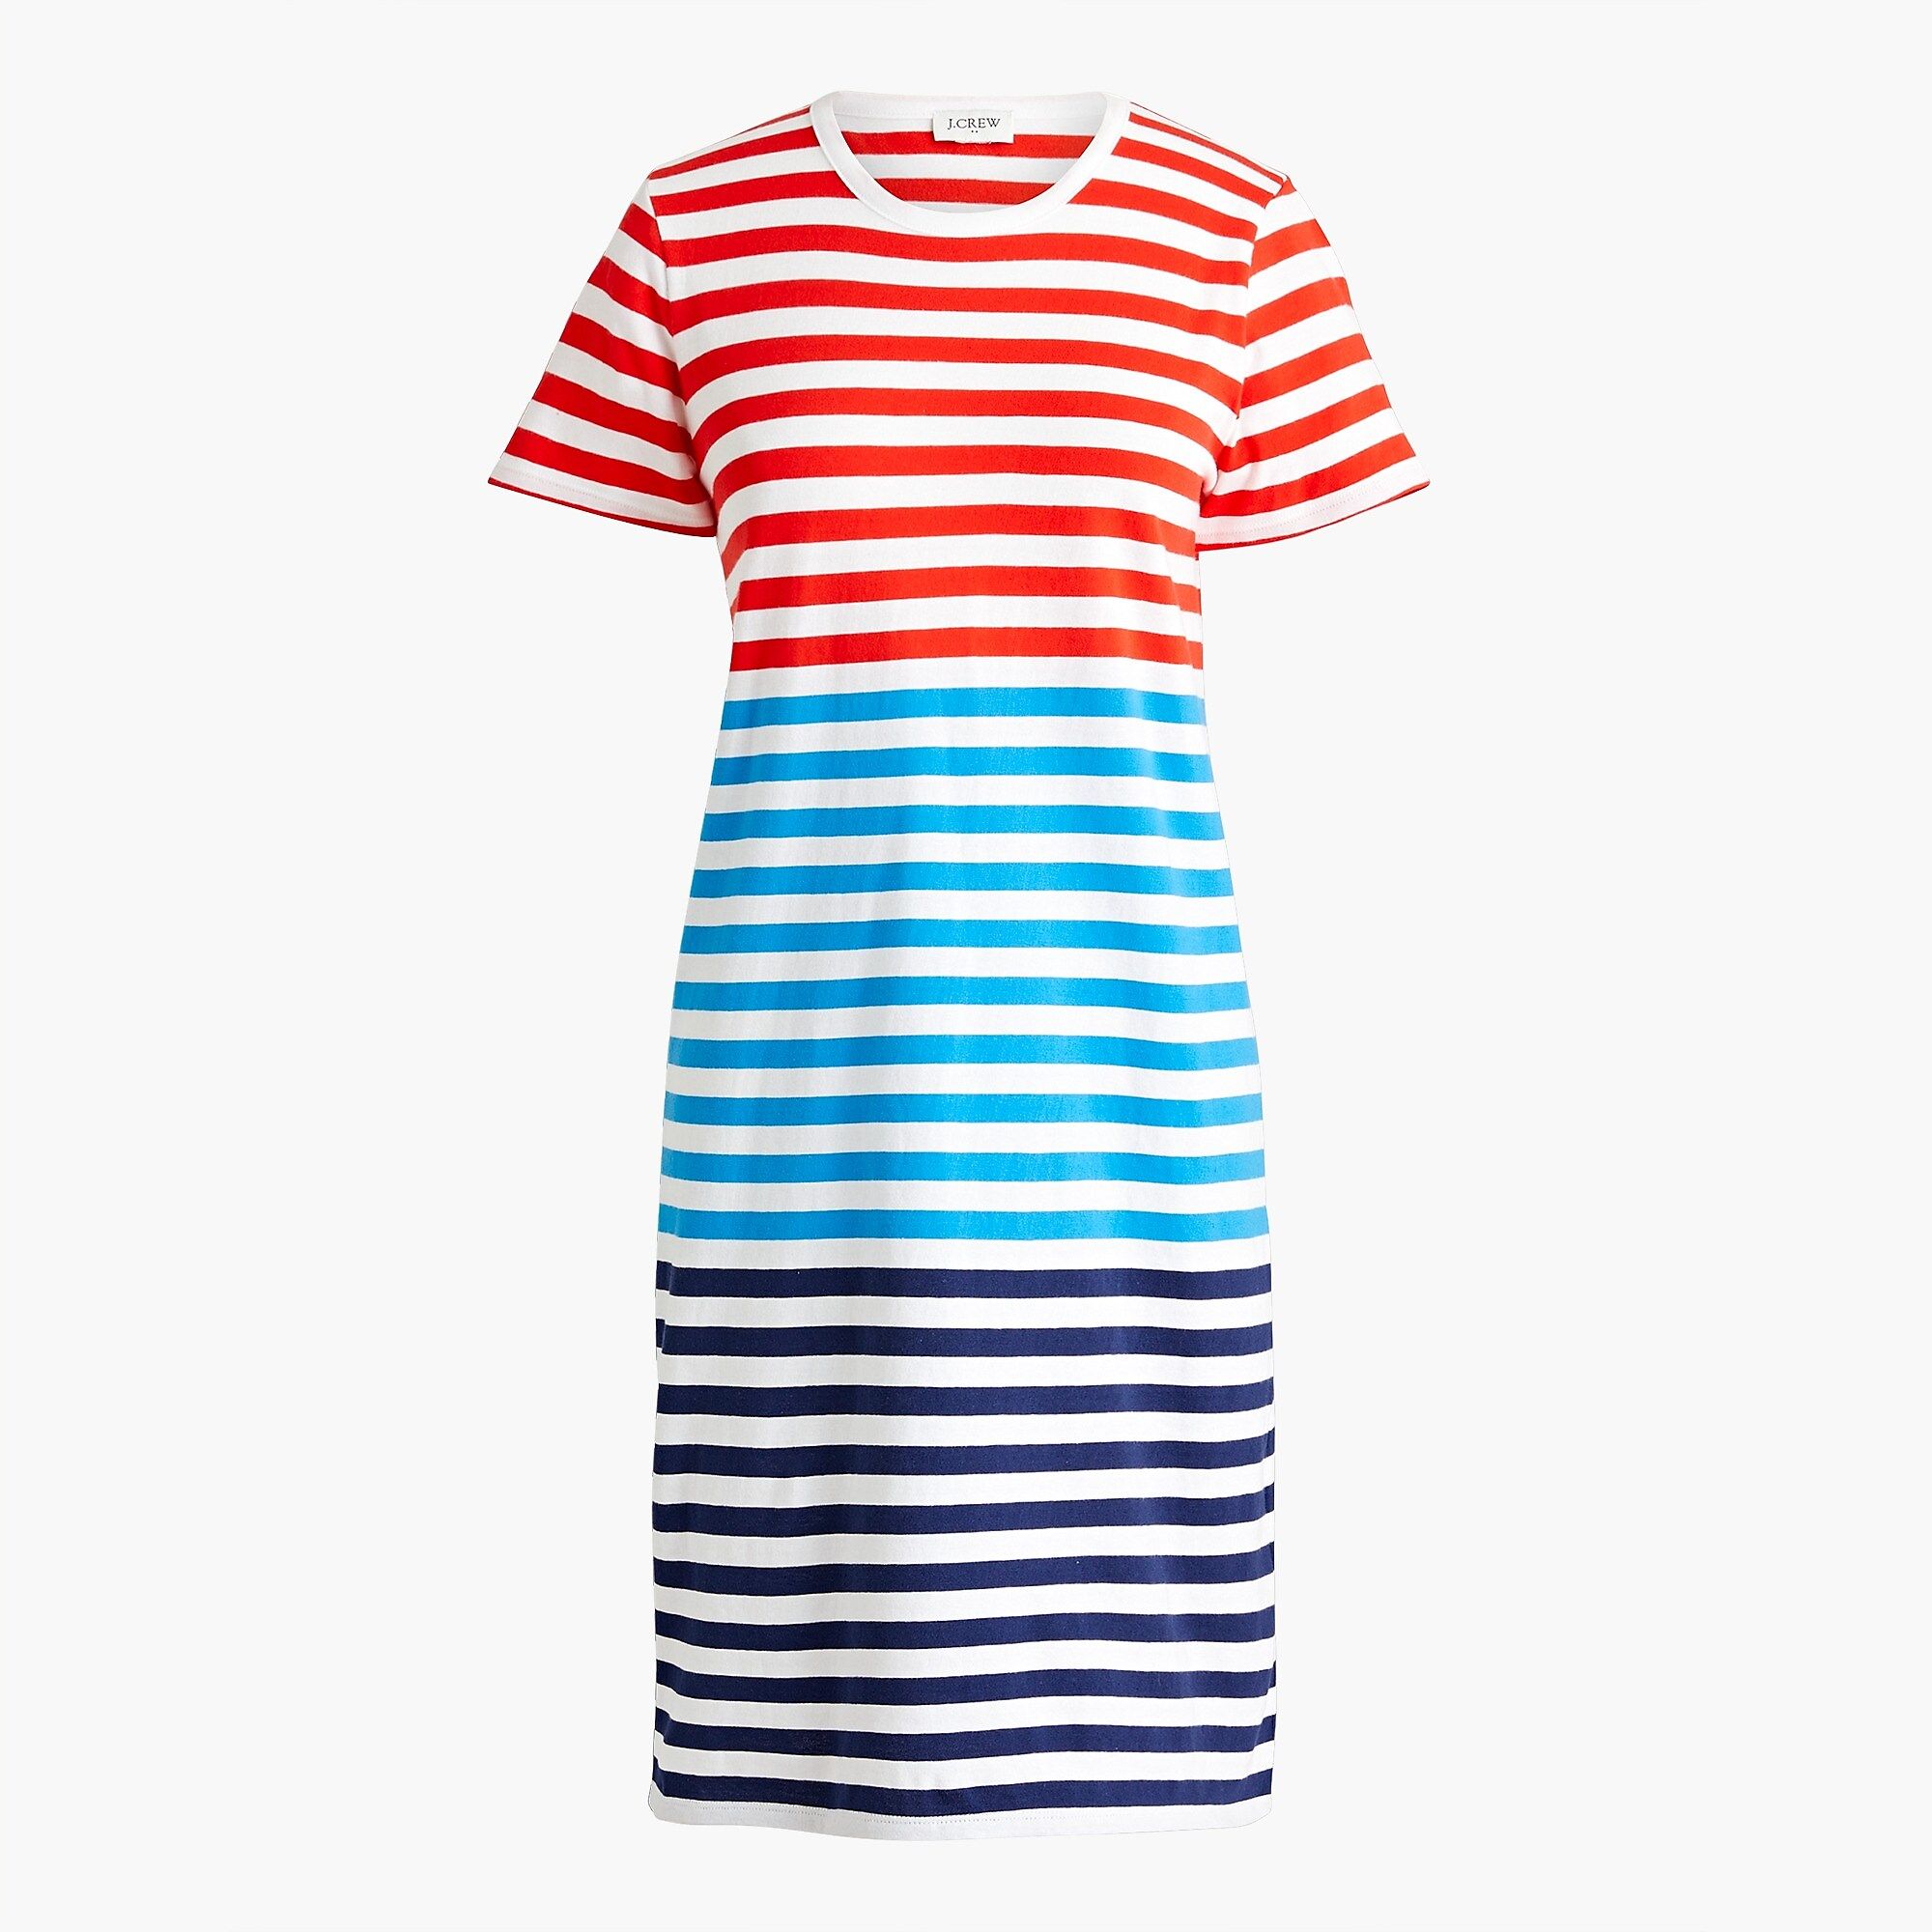 Short-sleeve mixed-stripe T-shirt dress | J.Crew Factory